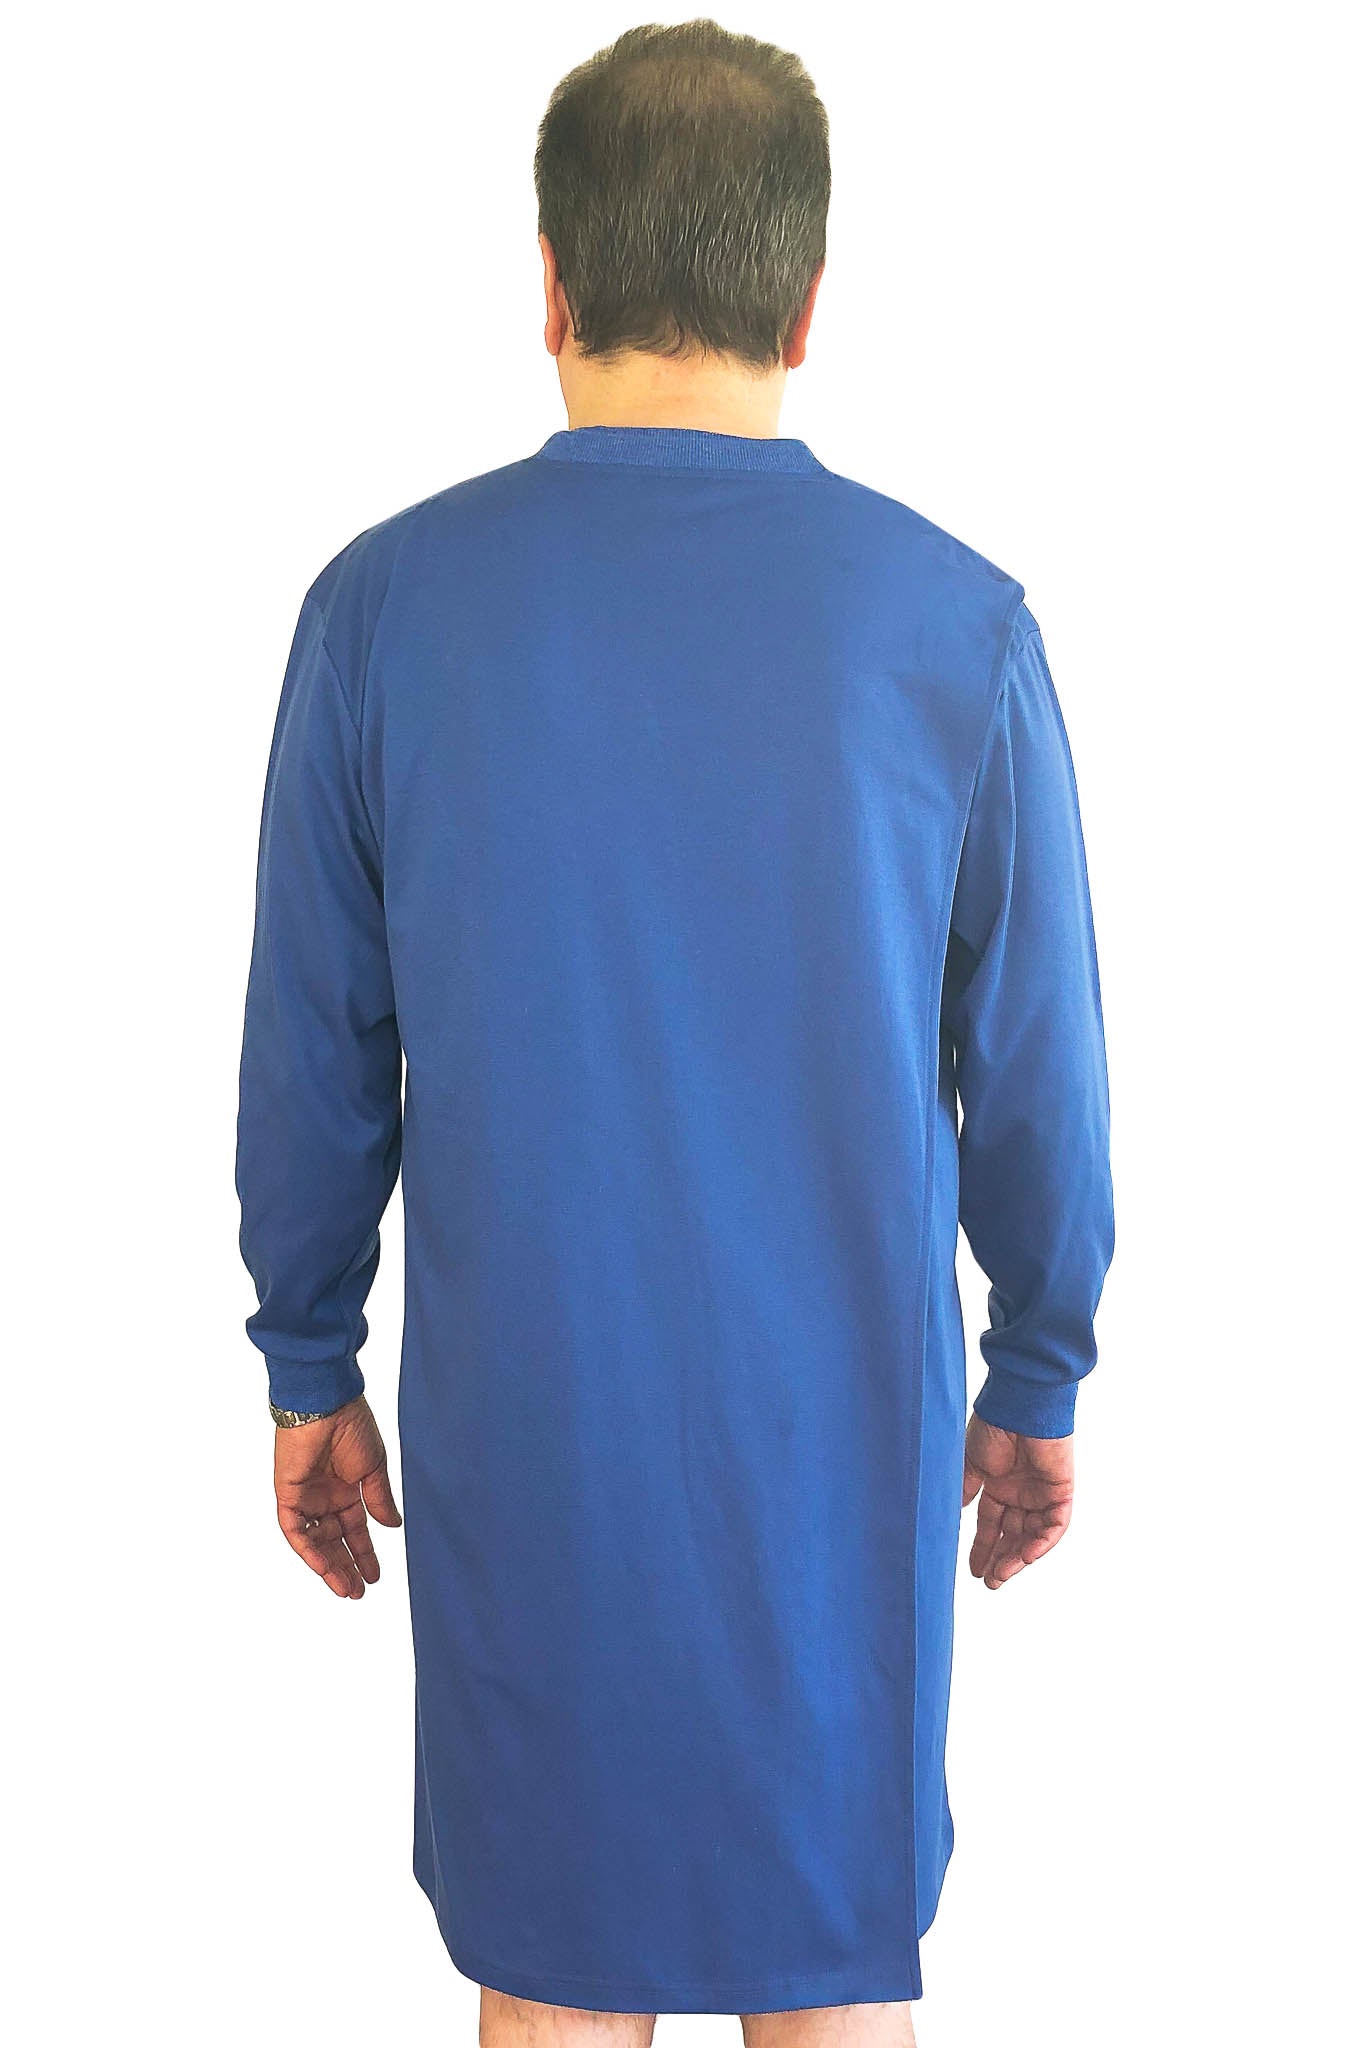 Nightshirt for Men - Blue | Felix | Adaptive Clothing by Ovidis